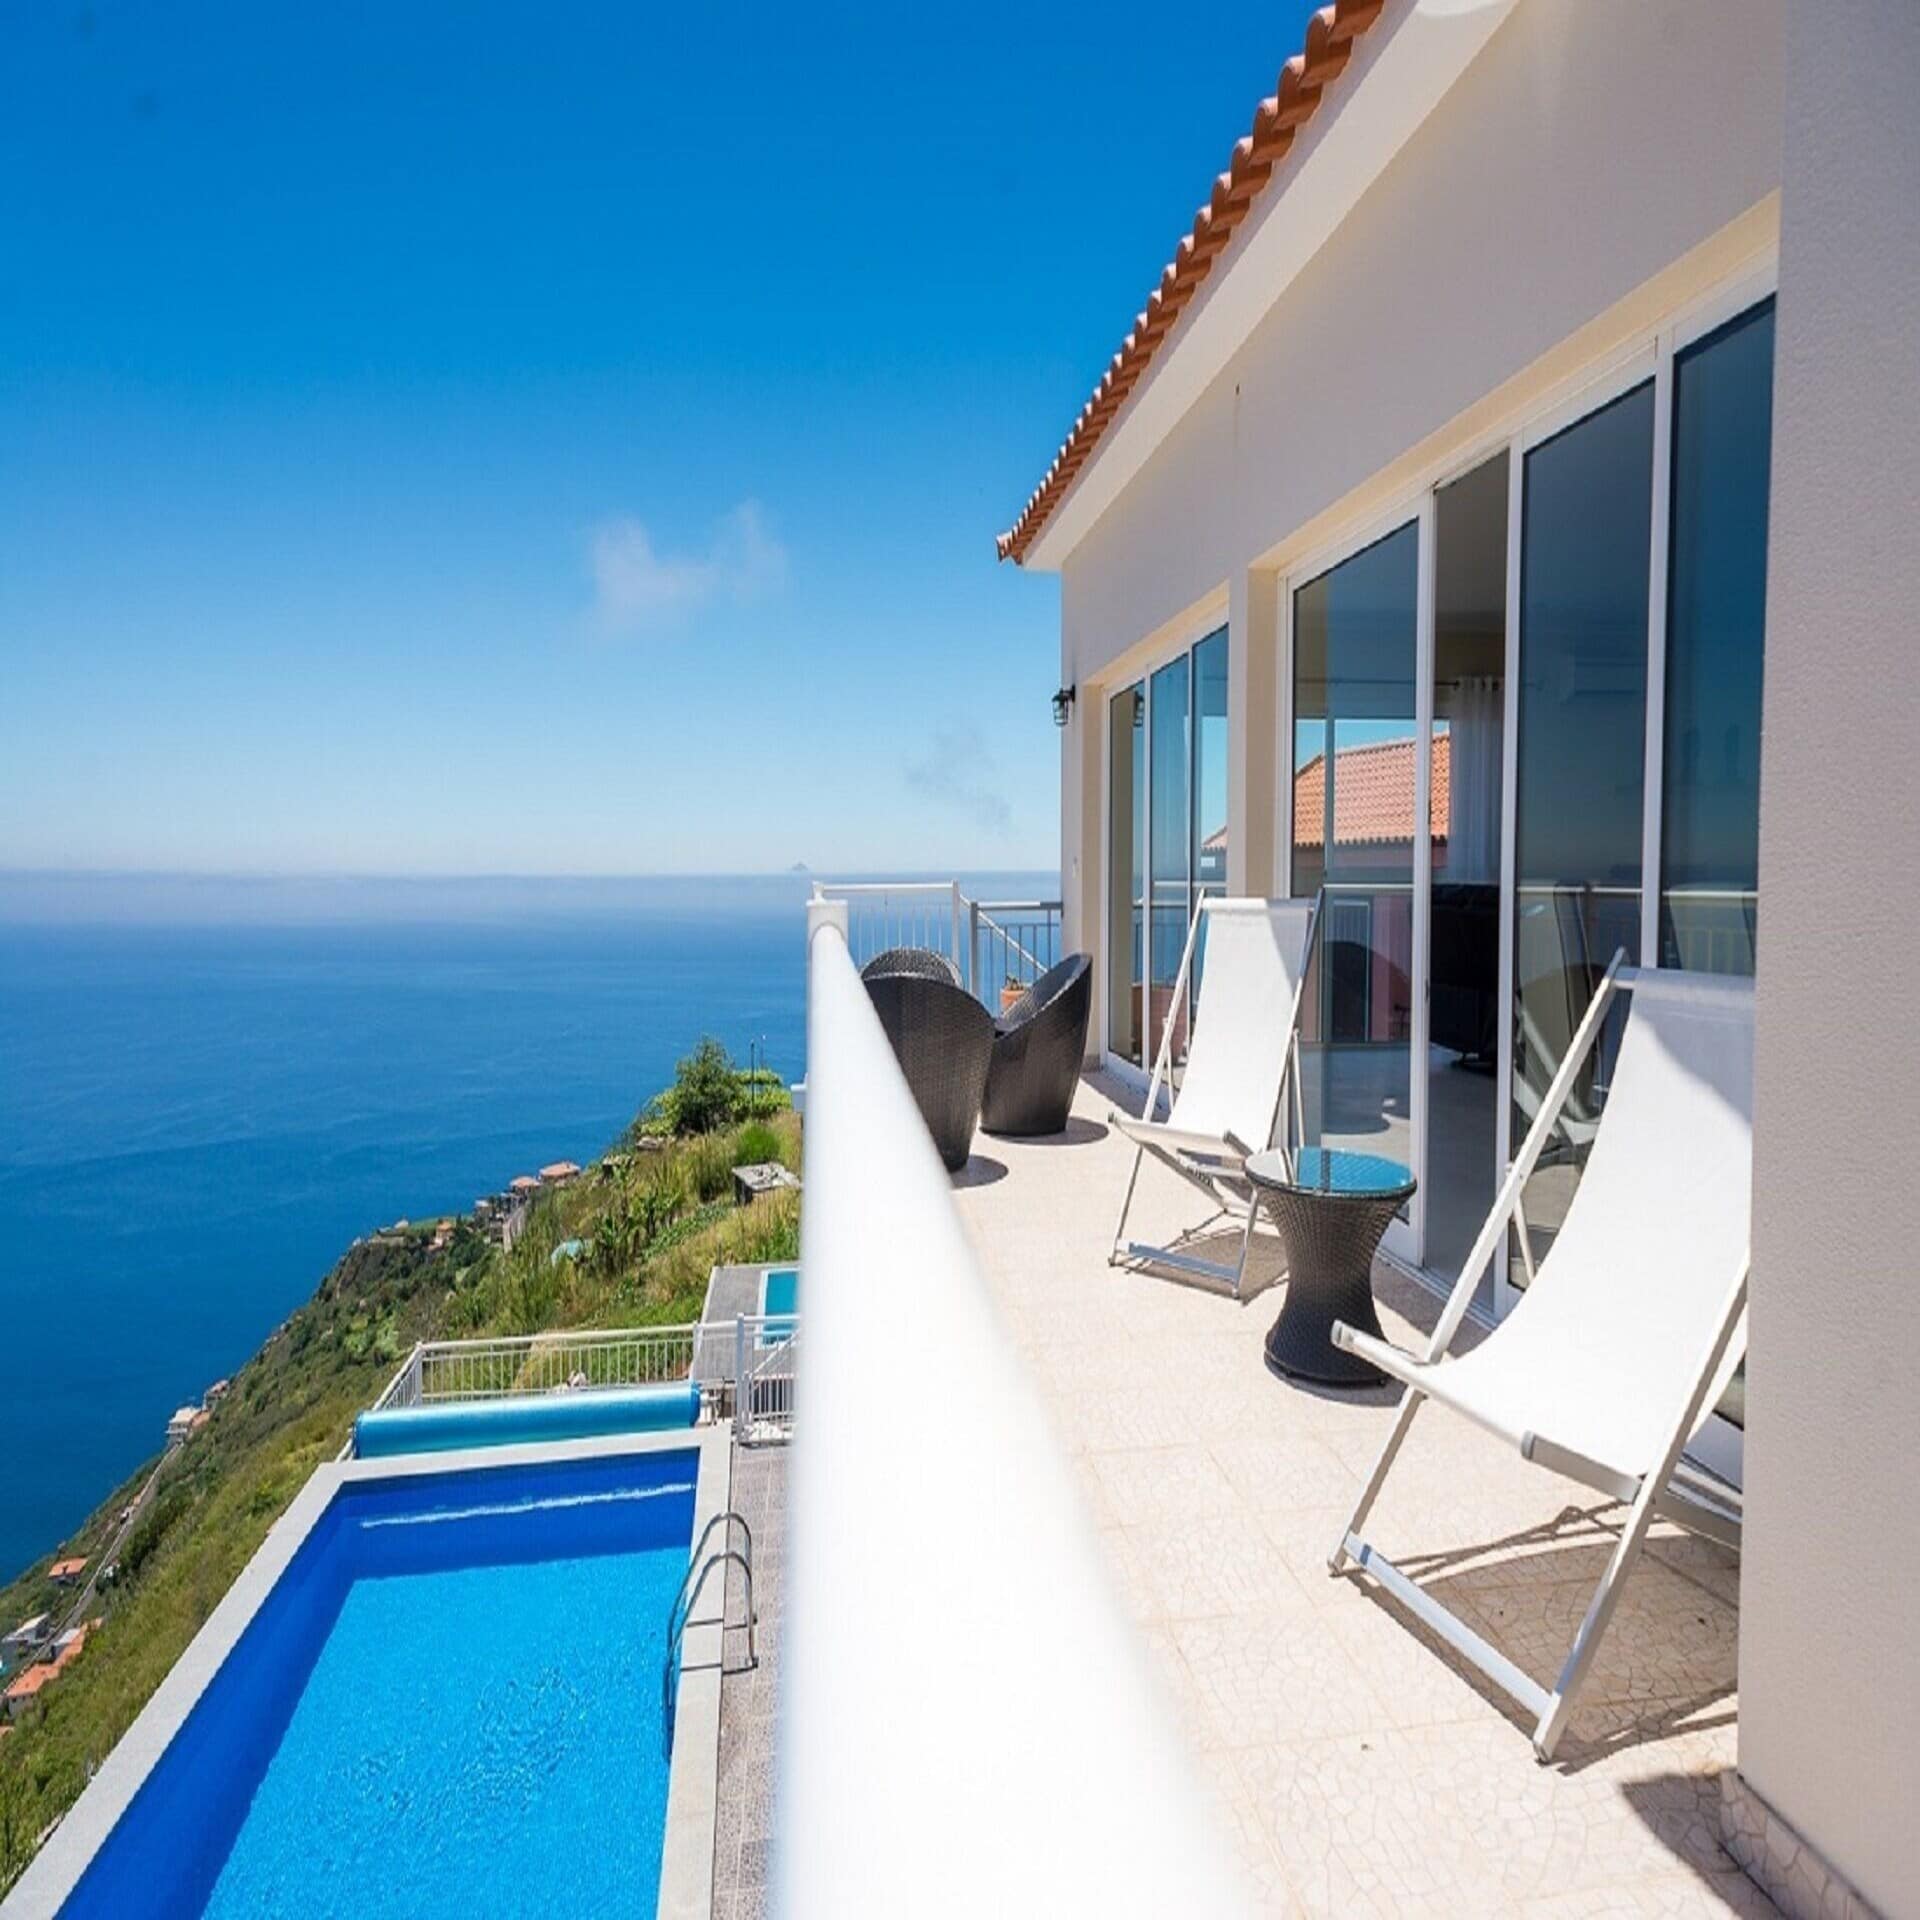 Balkon mit Meerblick eines weißen Hauses, darunter ein Pool auf einem Hügel. 